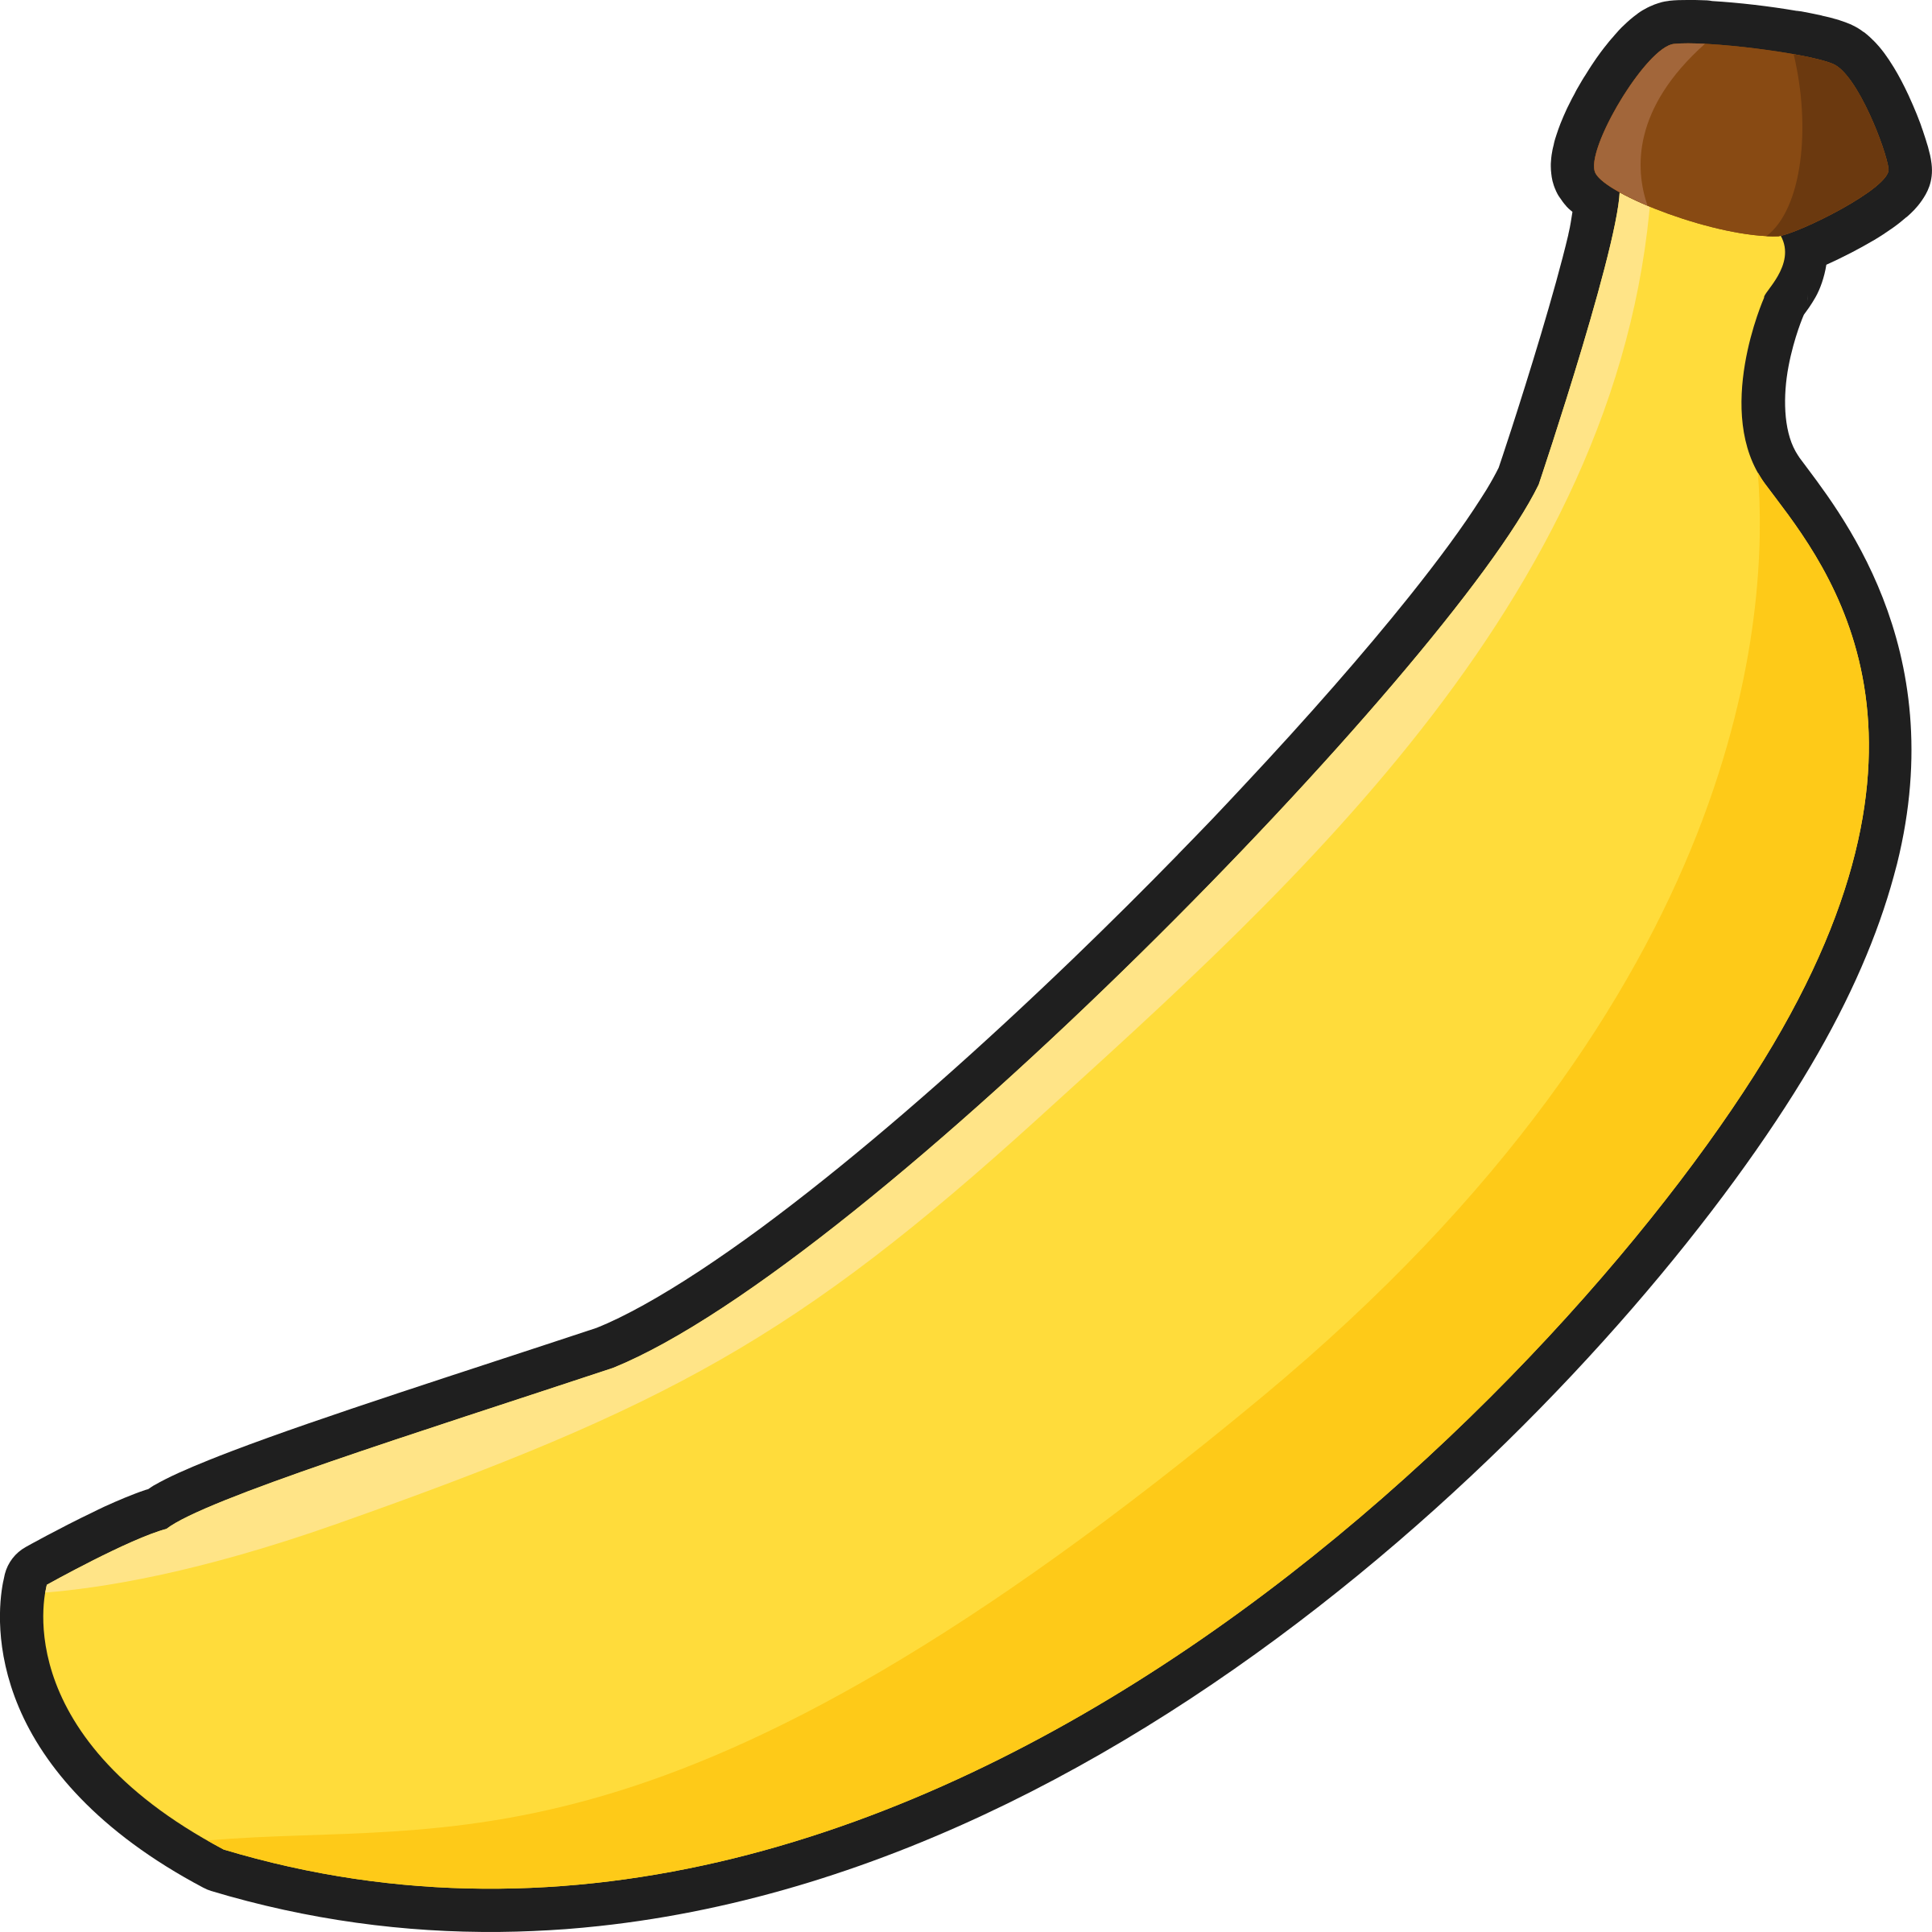 Banana Clipart at GetDrawings Free download